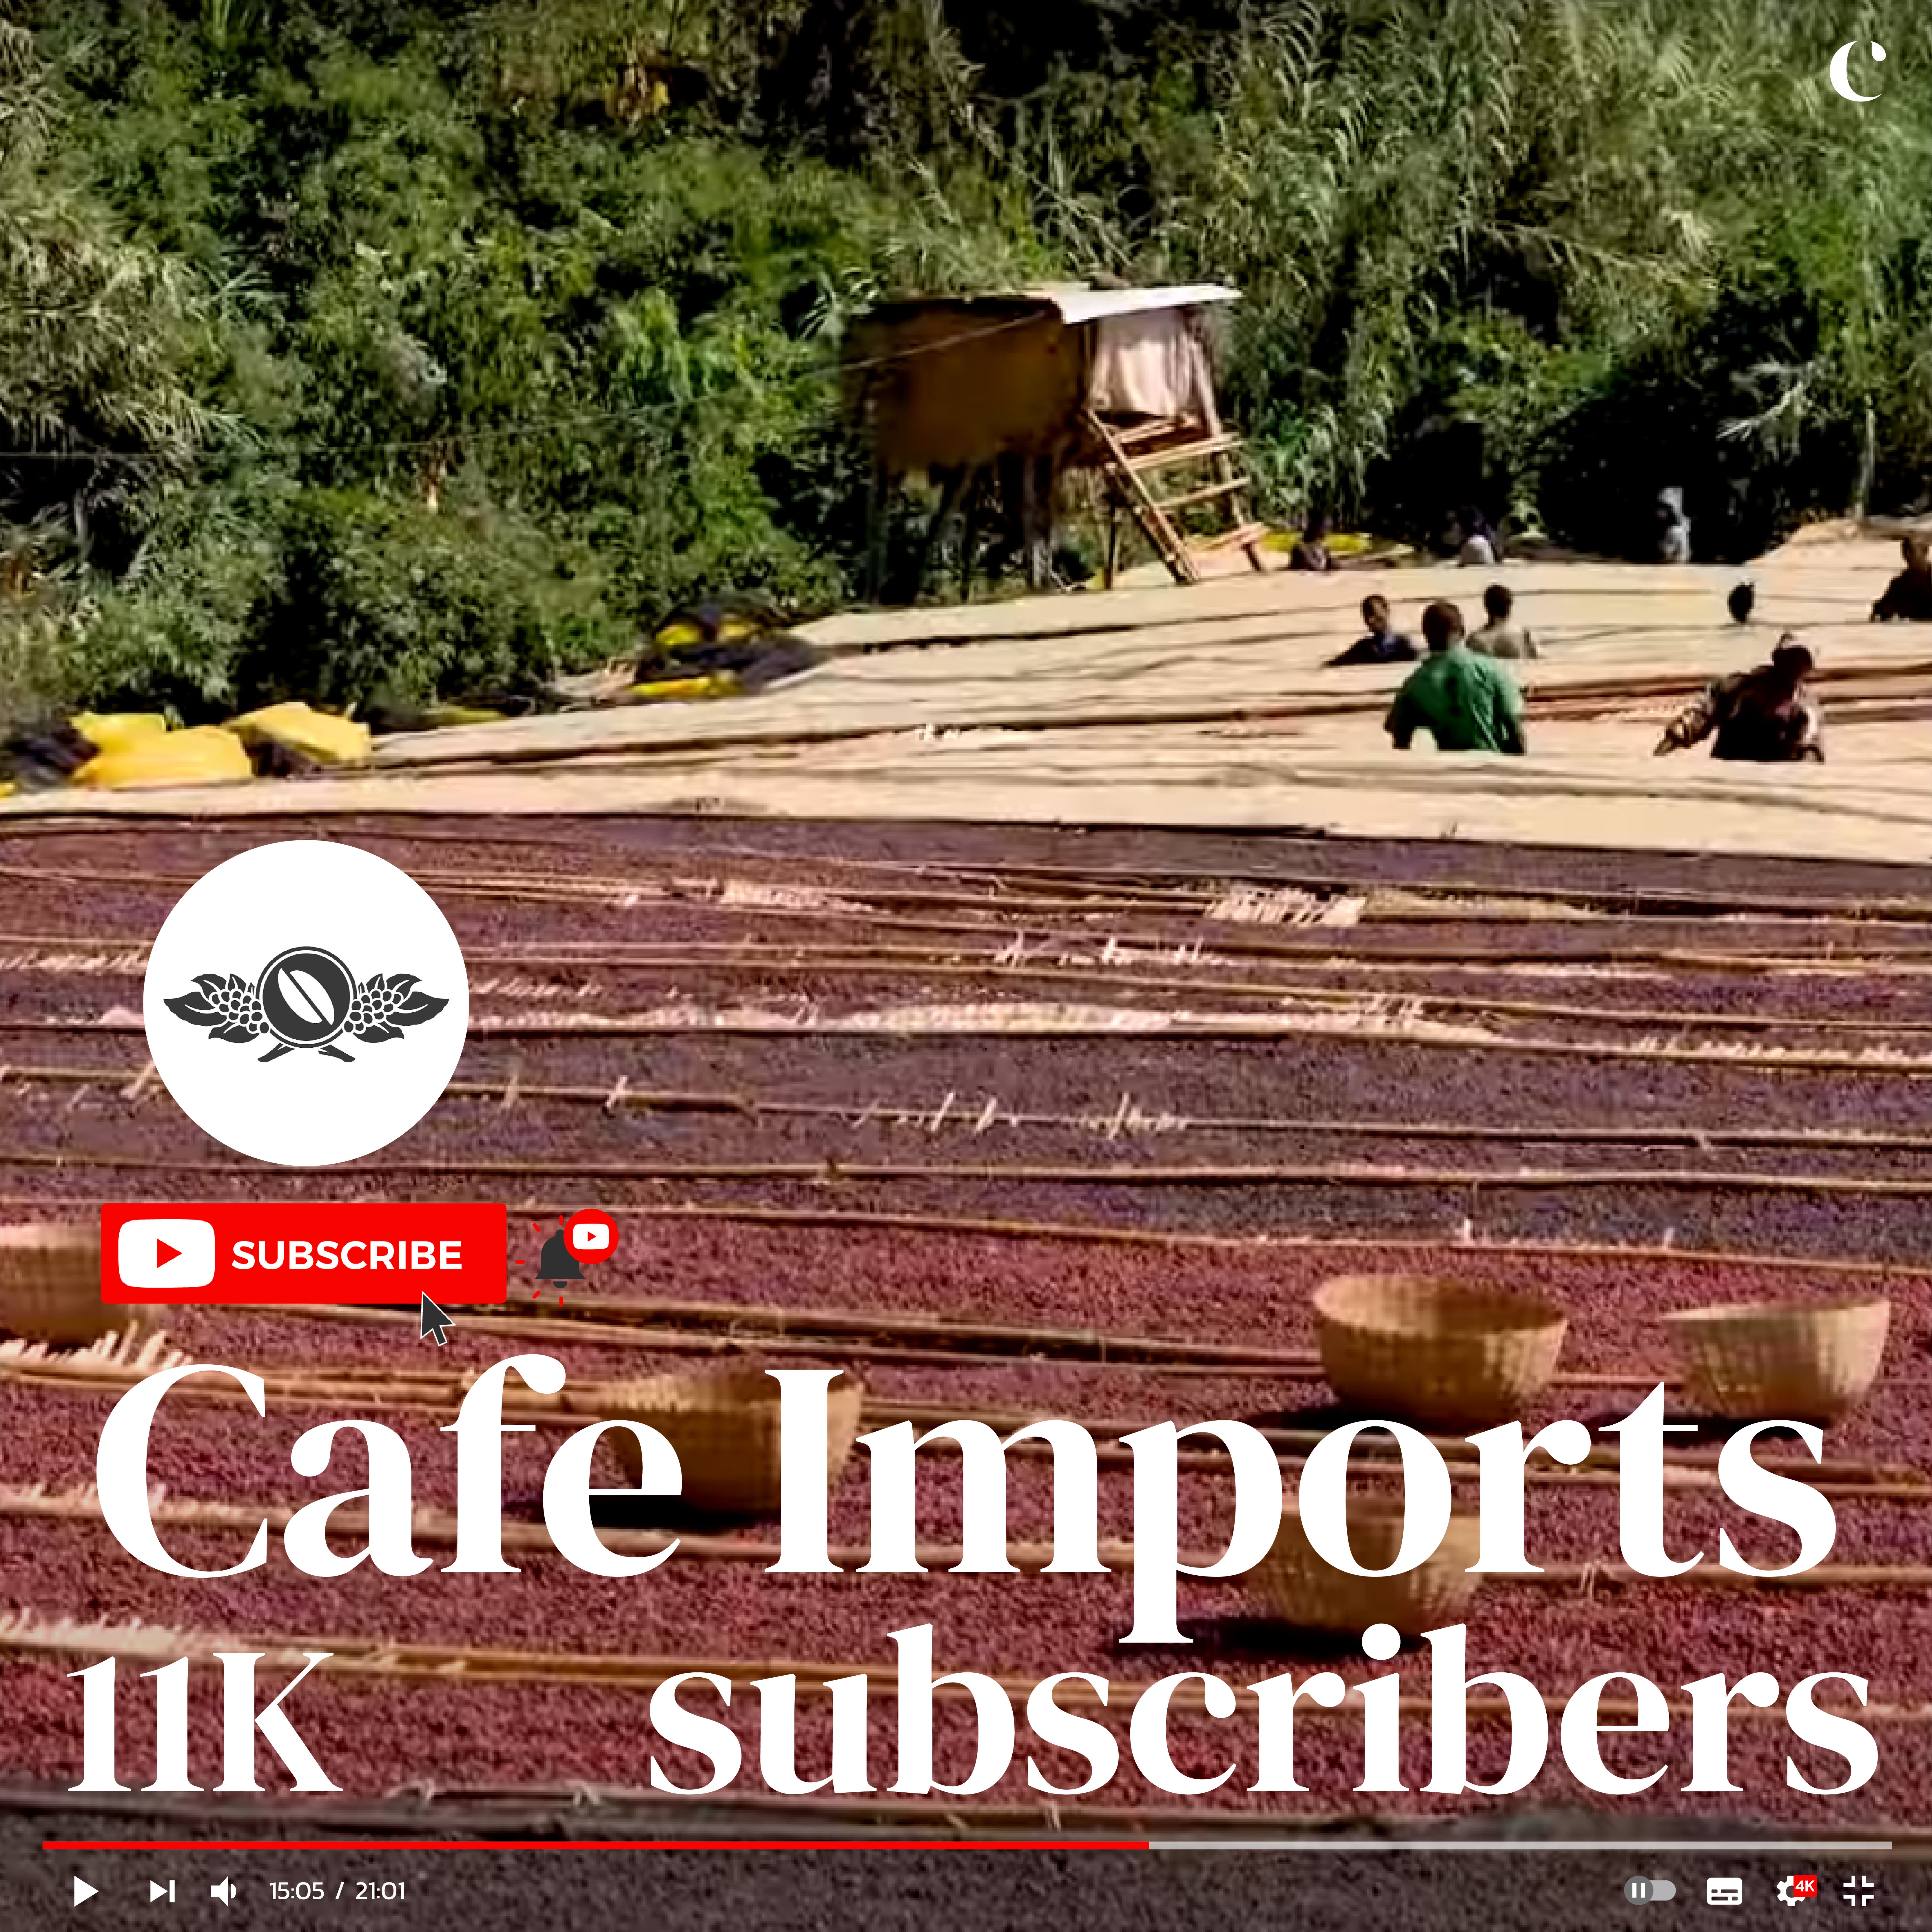 10 สุดยอดช่องกาแฟบน YouTube ที่ควรกดติดตาม  Cafe Imports